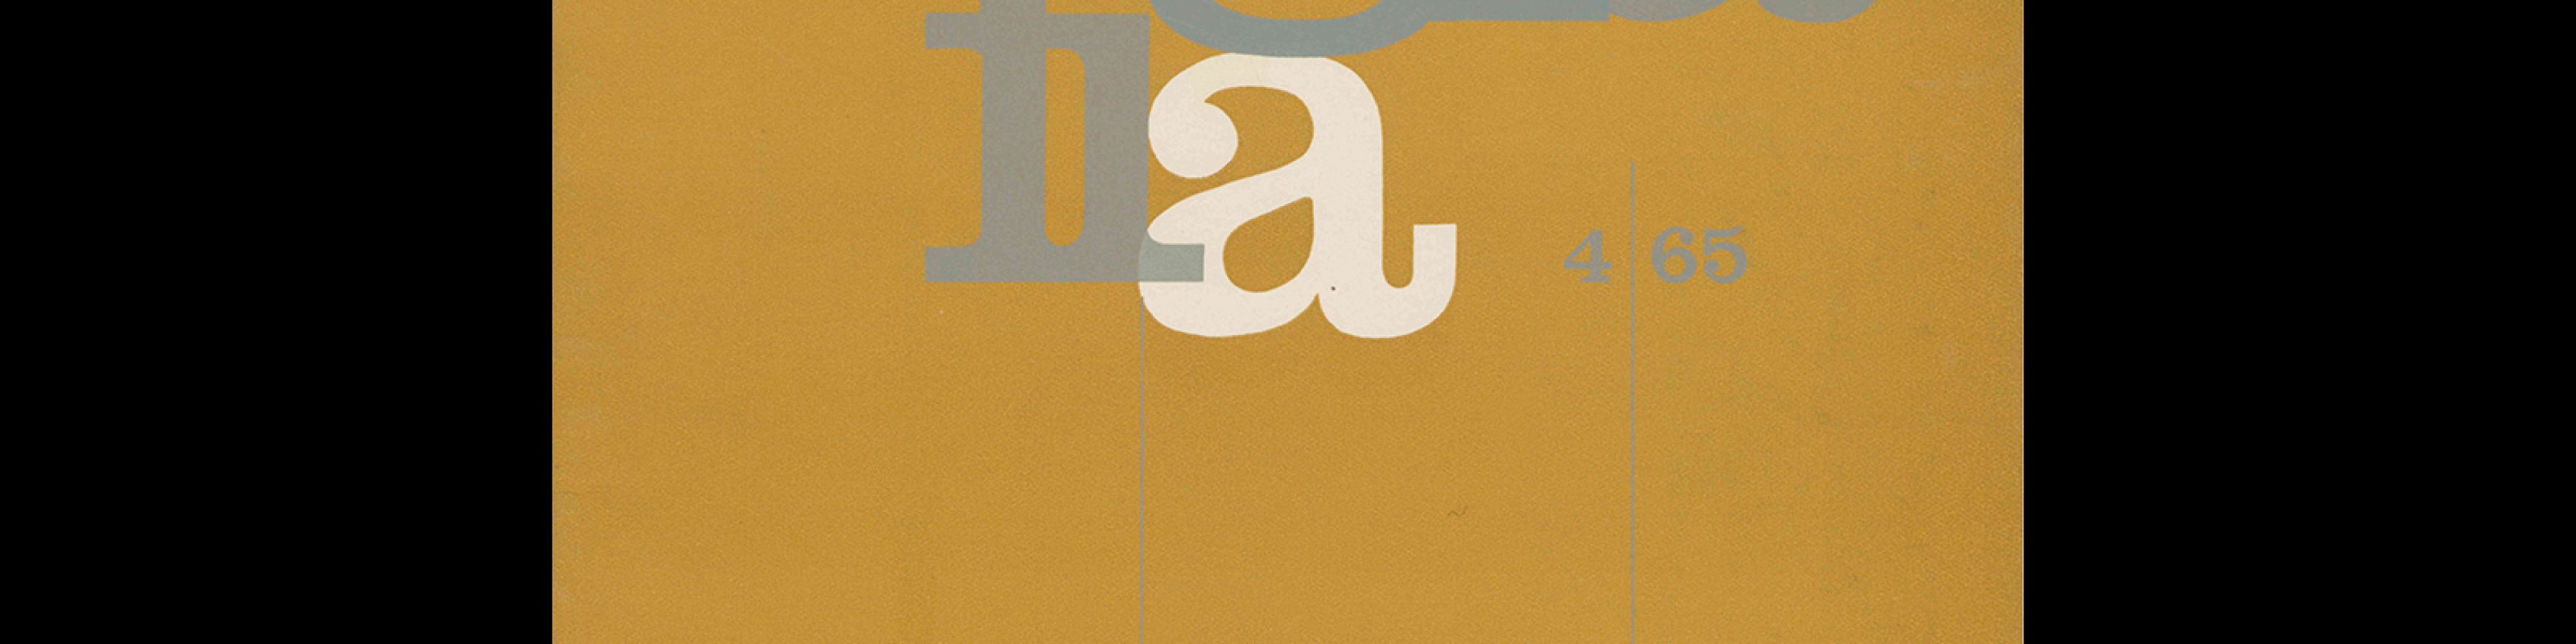 Typografia, ročník 68, 04, 1965. Cover design by Antonín Ernest